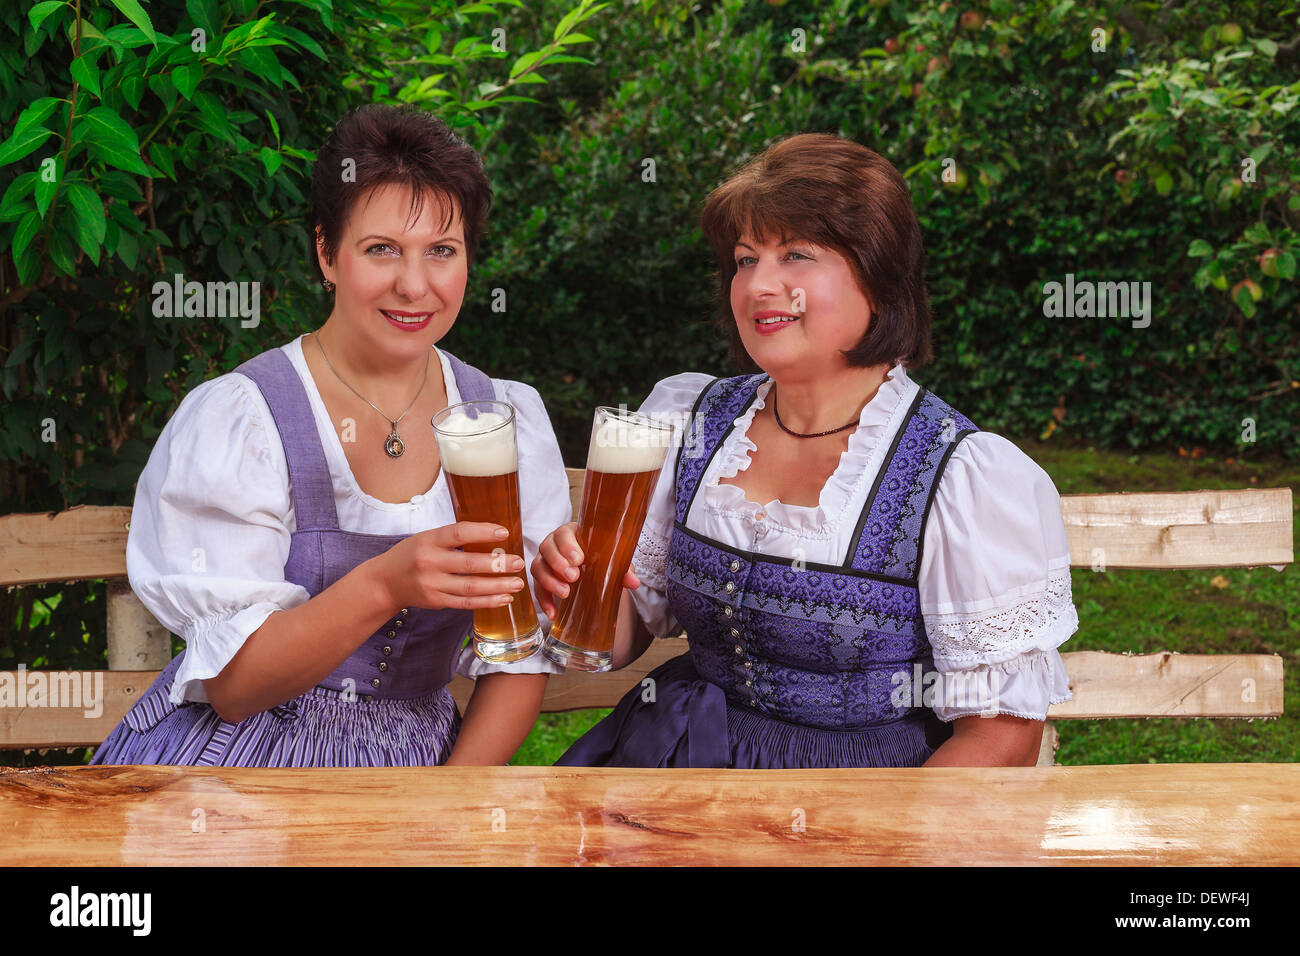 Two women in dirndls drinking beer Stock Photo